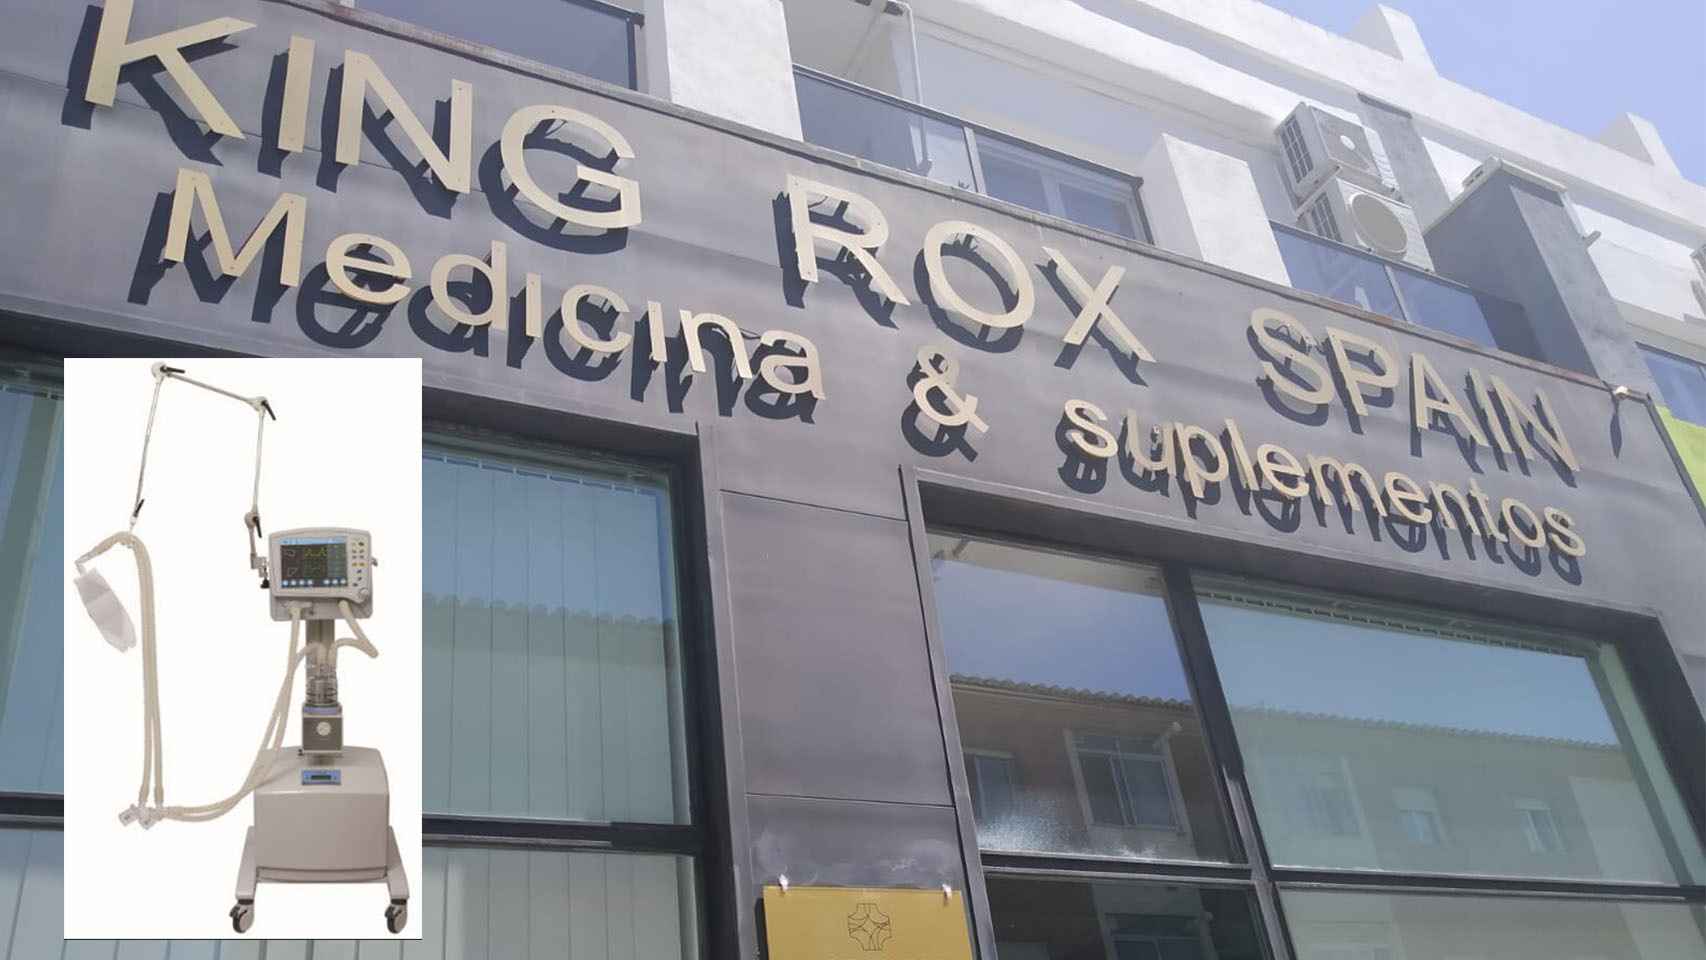 Tec Pharma Europe SL comparte sede con King Rox Spain, una empresa dedicada a la venta de suplementos alimenticios para deportistas.